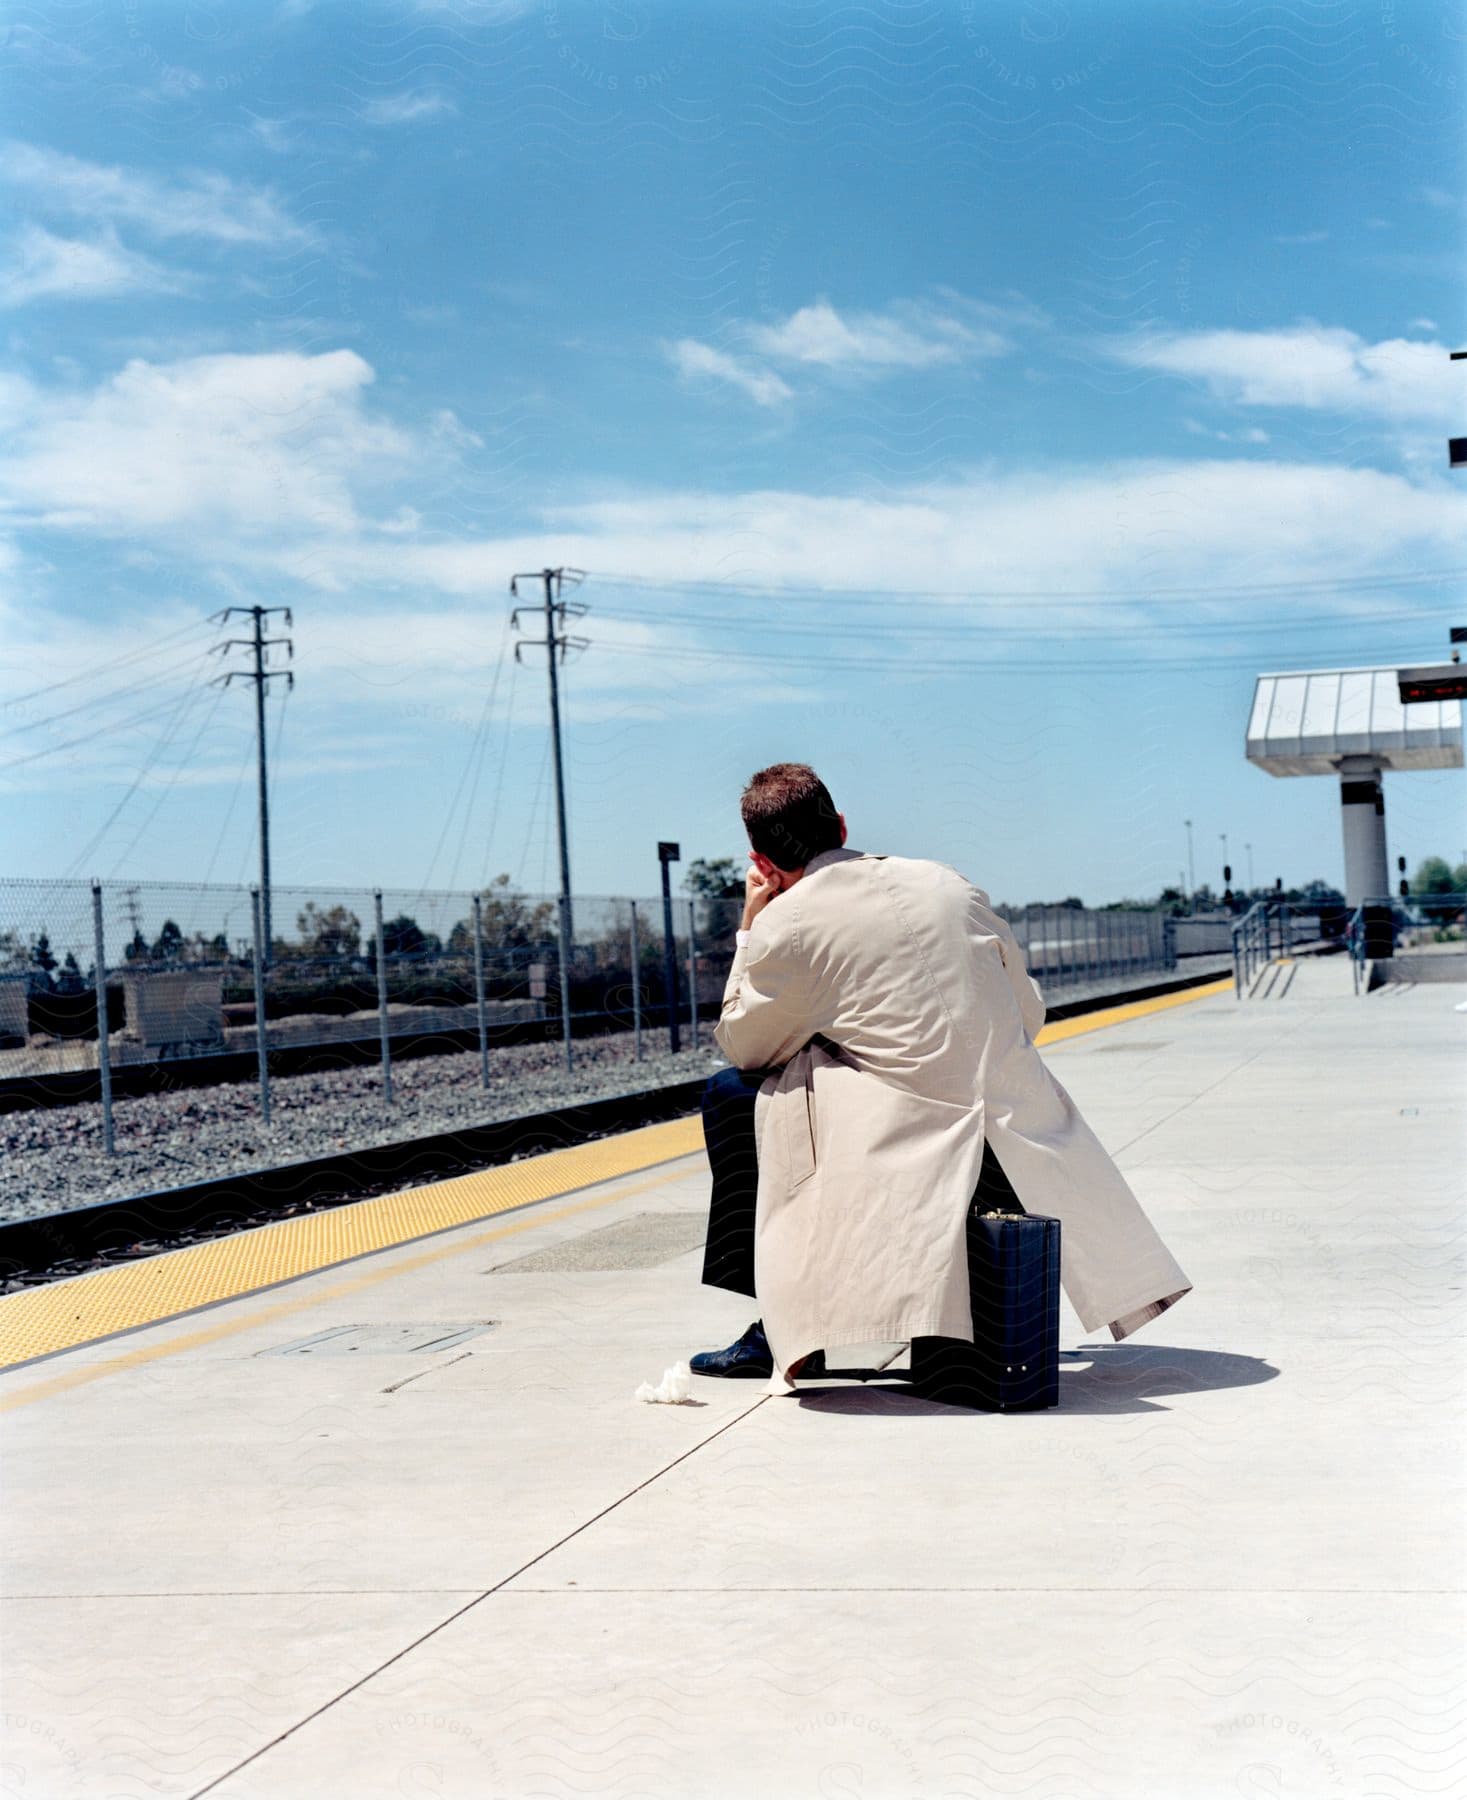 Man in white coat sitting on briefcase waiting at metro station platform